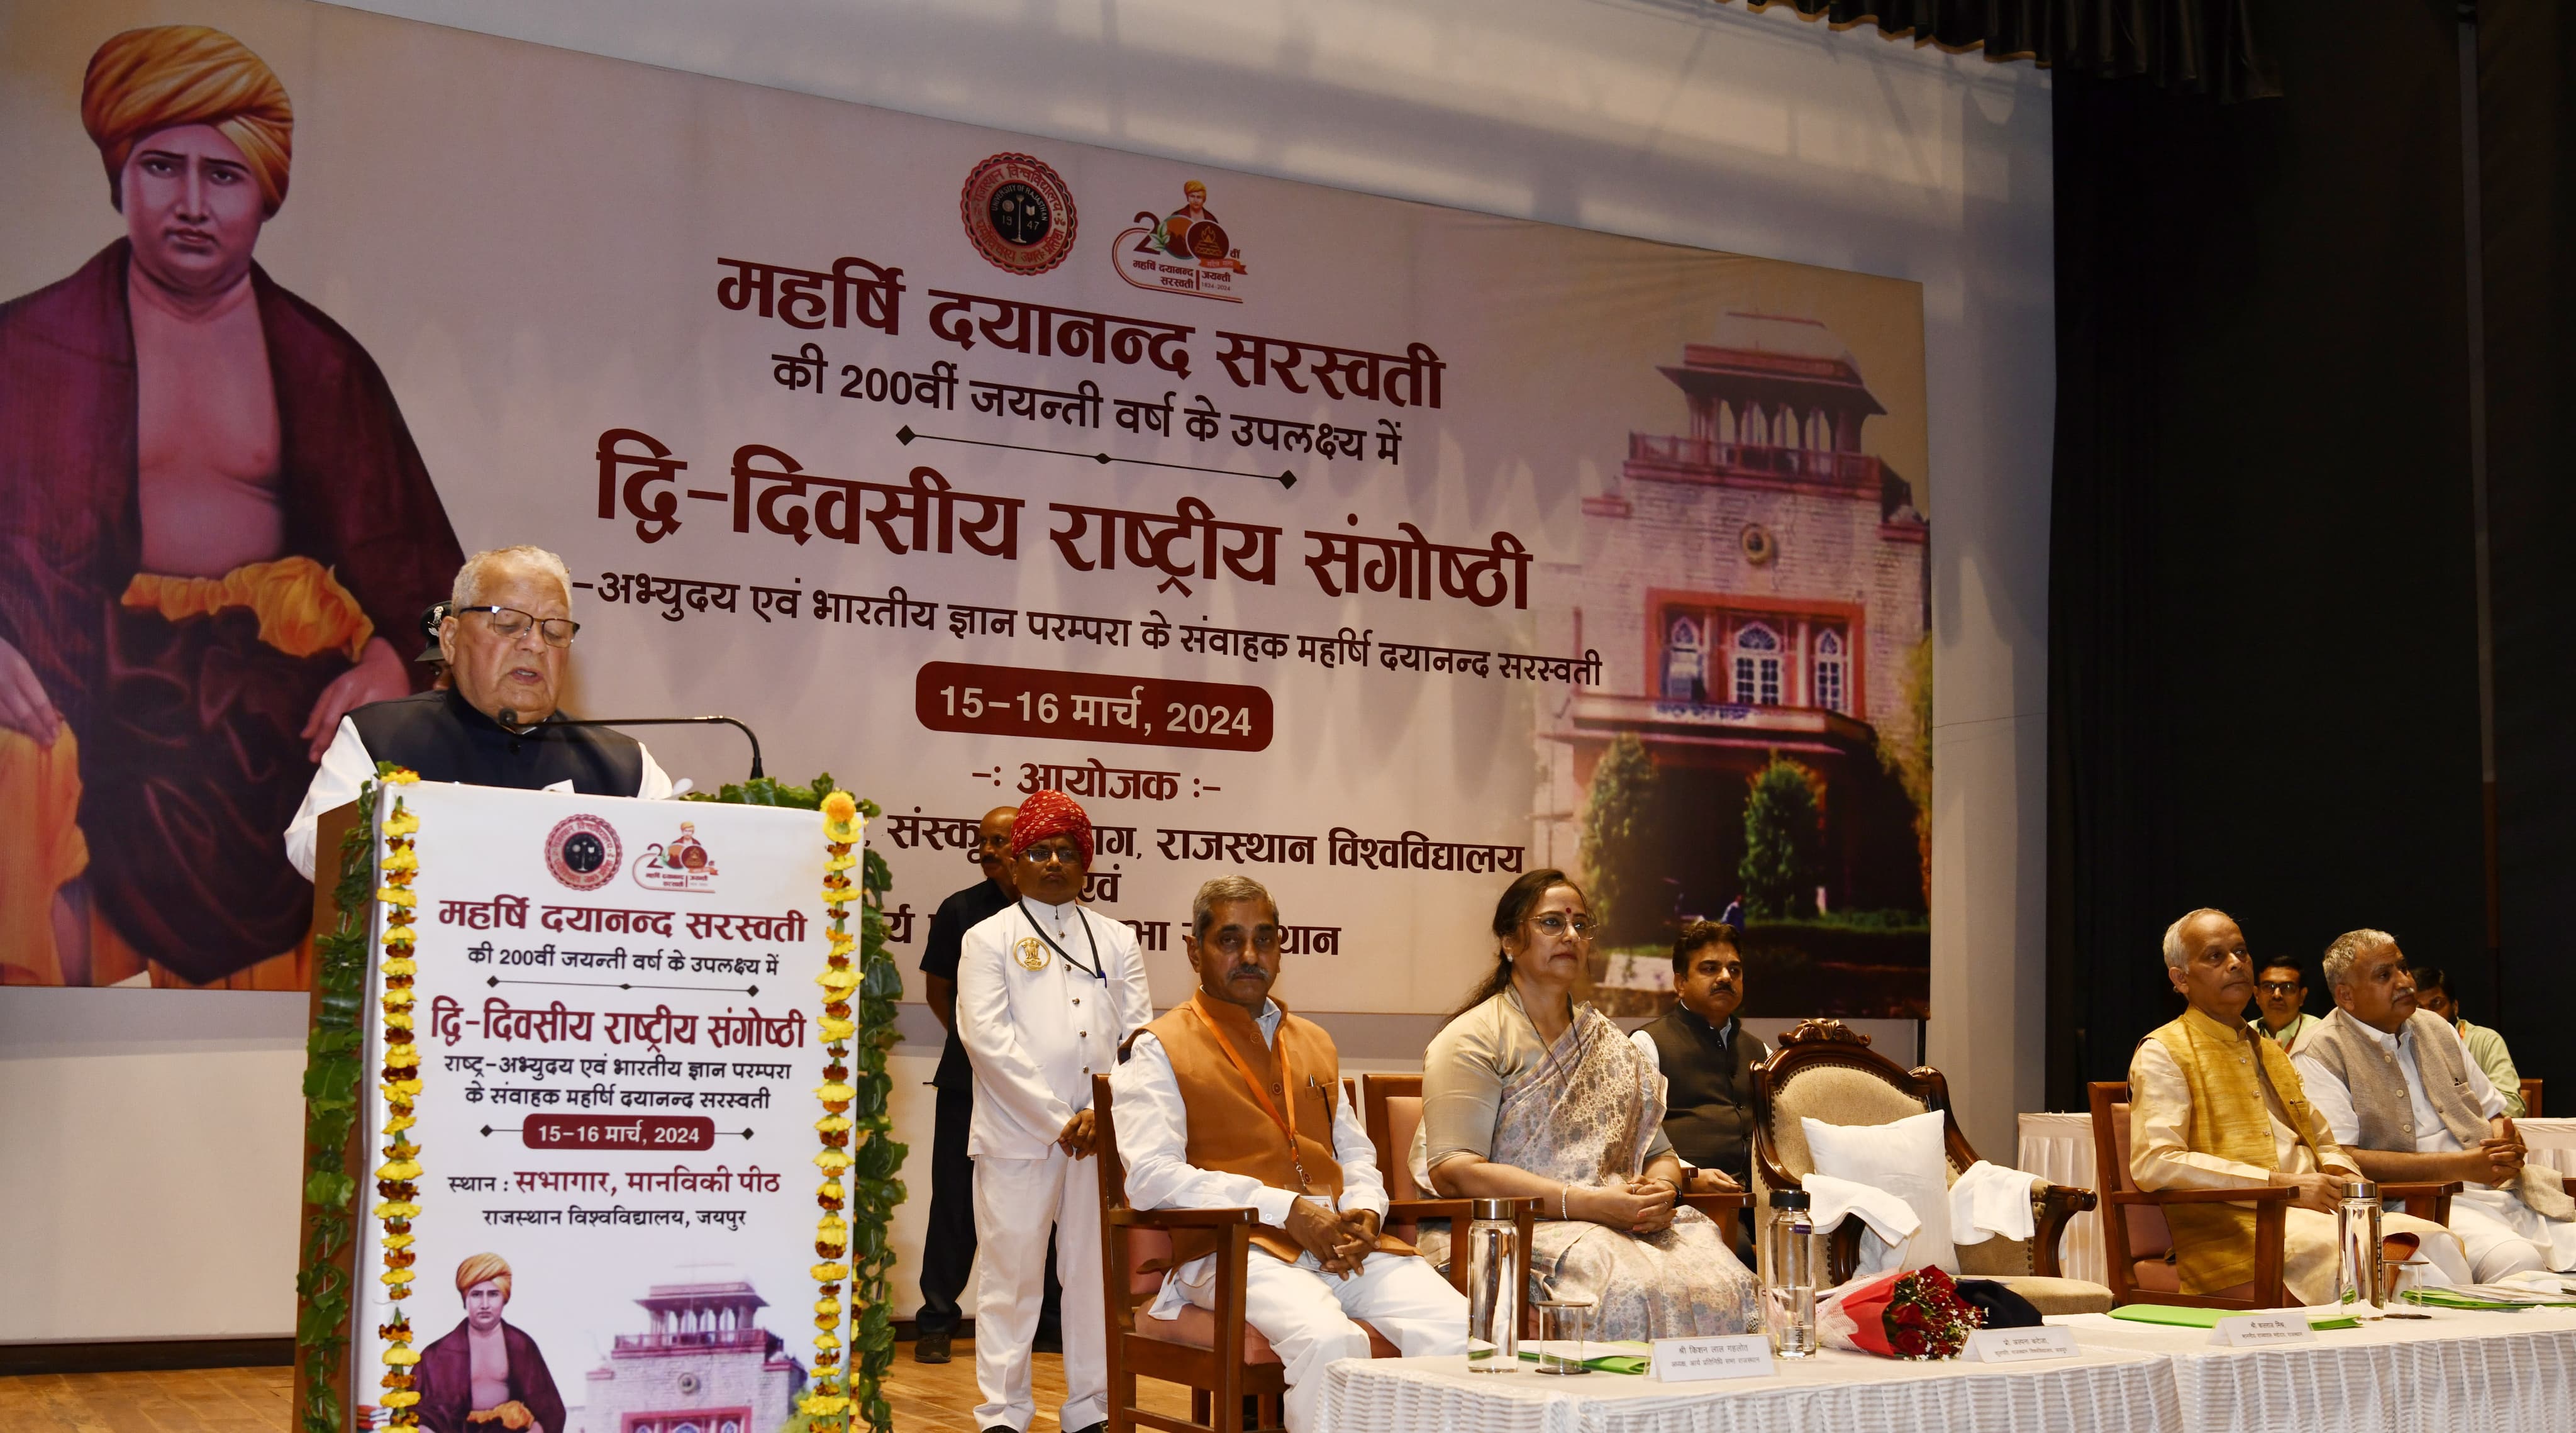 राजस्थान विश्वविद्यालय में ’’राष्ट्र-अभ्युदय एवं भारतीय ज्ञान परम्परा के संवाहक महर्षि दयानन्द सरस्वती’’ विषयक राष्ट्रीय संगोष्ठी आयोजित